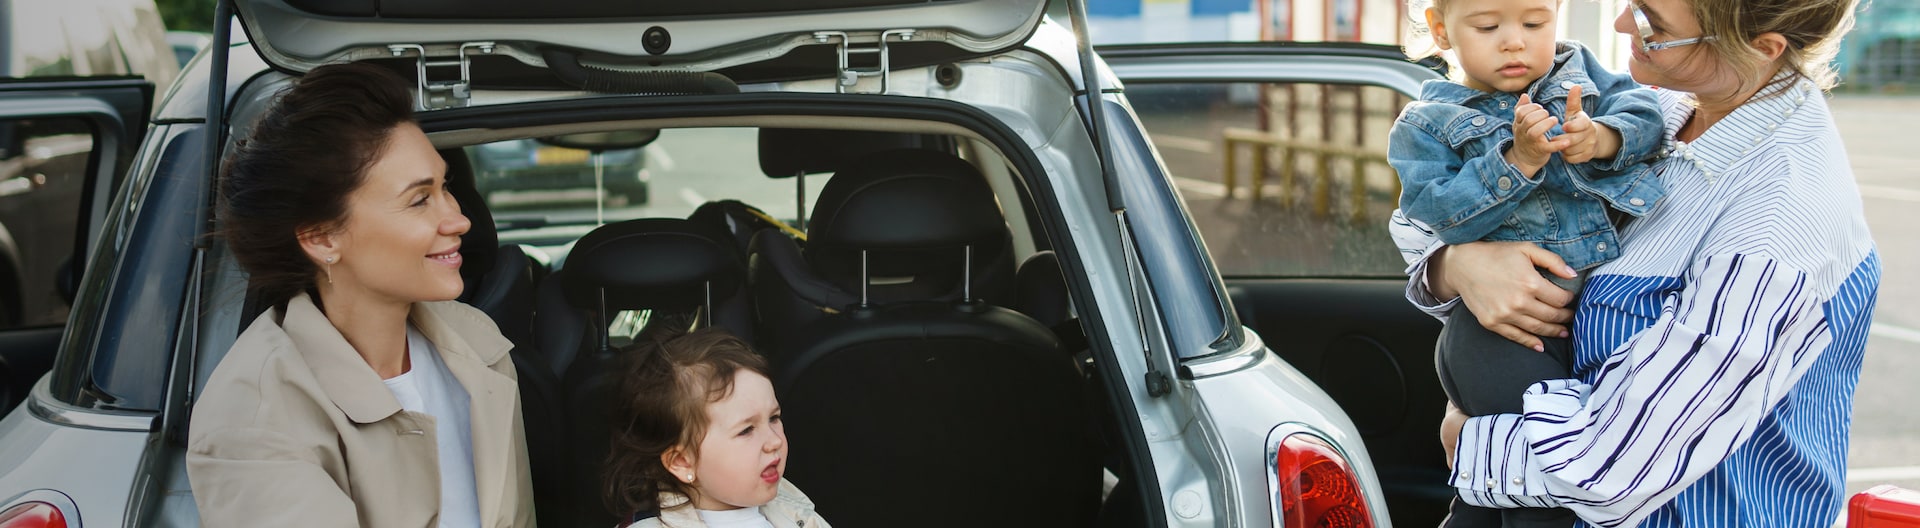 Två vuxna och två barn konverserar vid bagageutrymmet på en bil